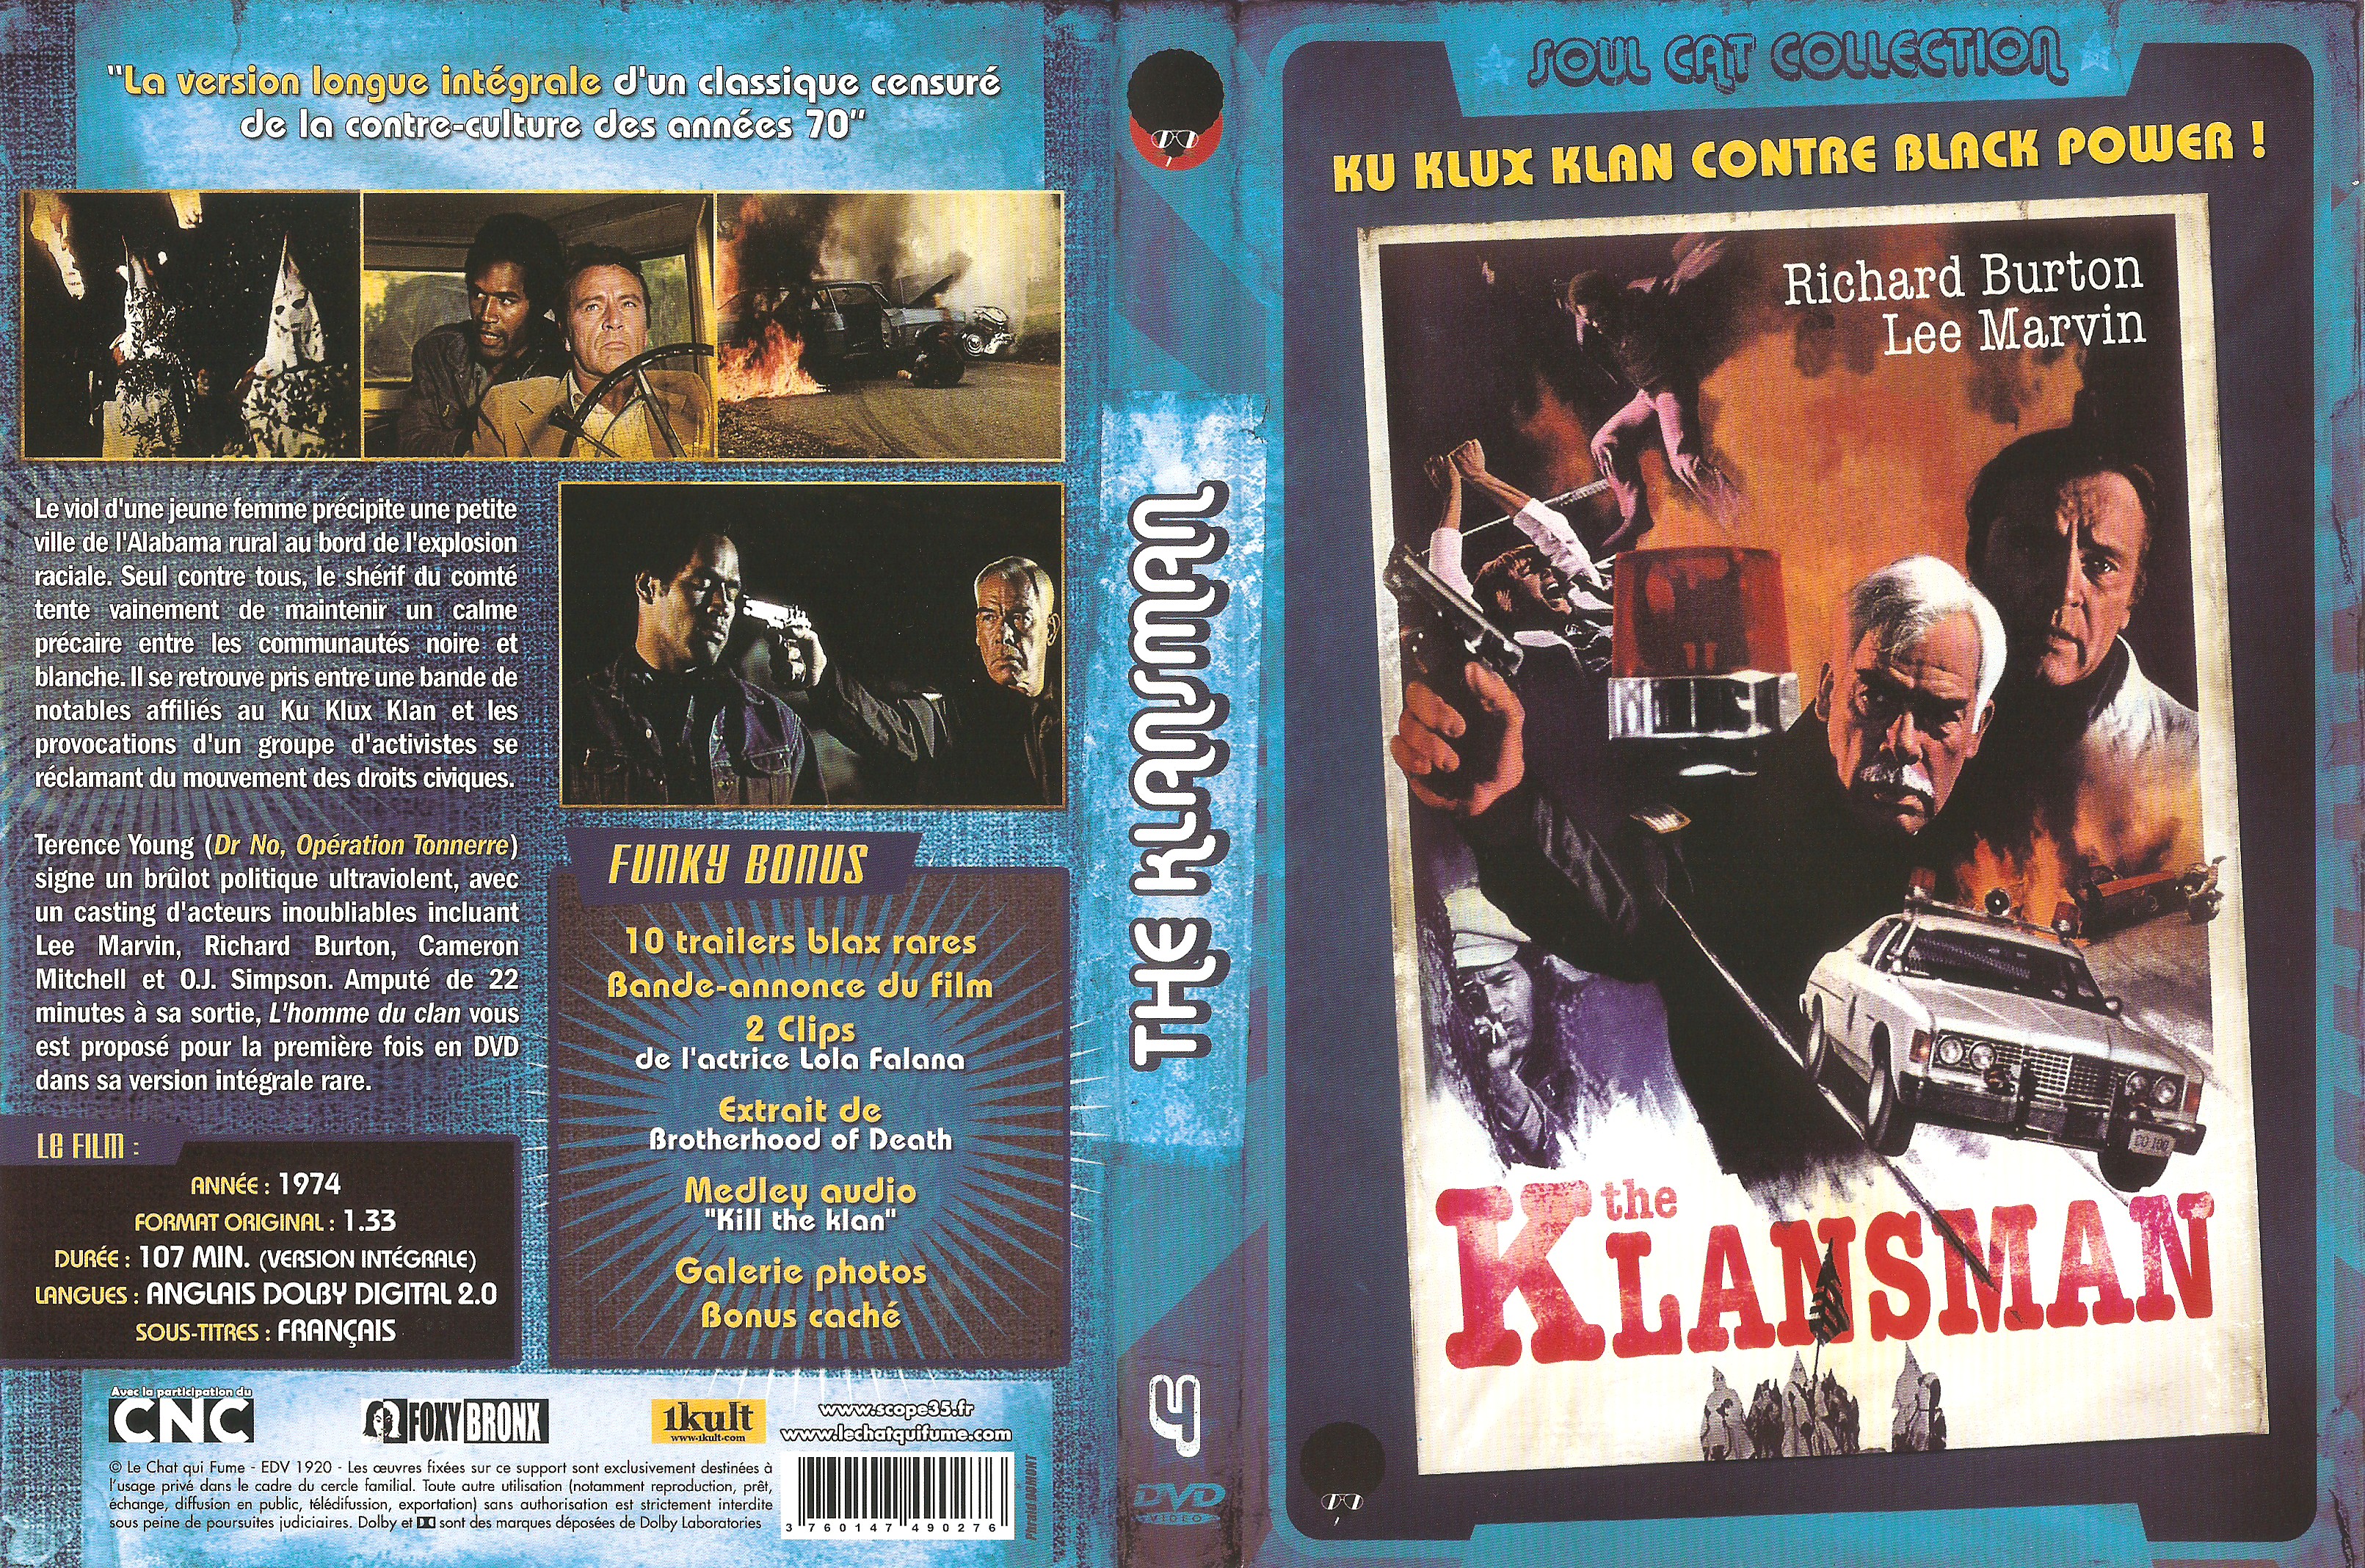 Jaquette DVD The klansman